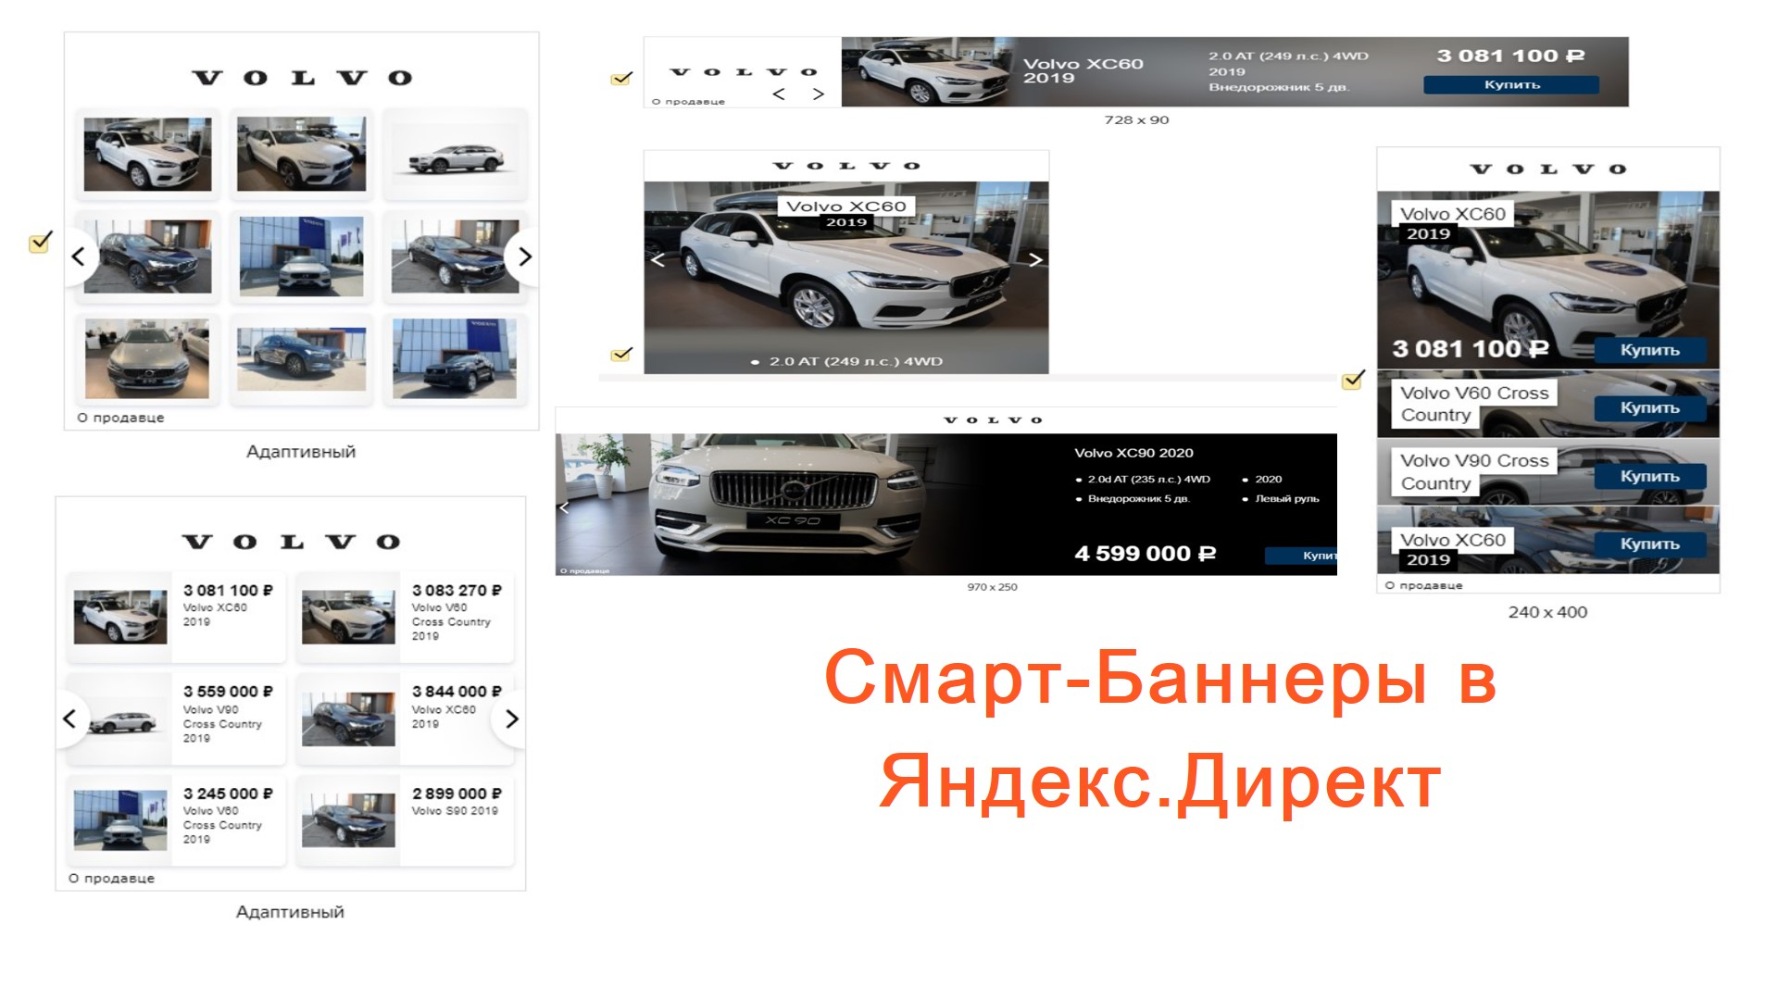 Volvo Car Кубань - Уменьшить стоимость лида на 73% и продать 78 автомобилей Вольво за 3 месяца